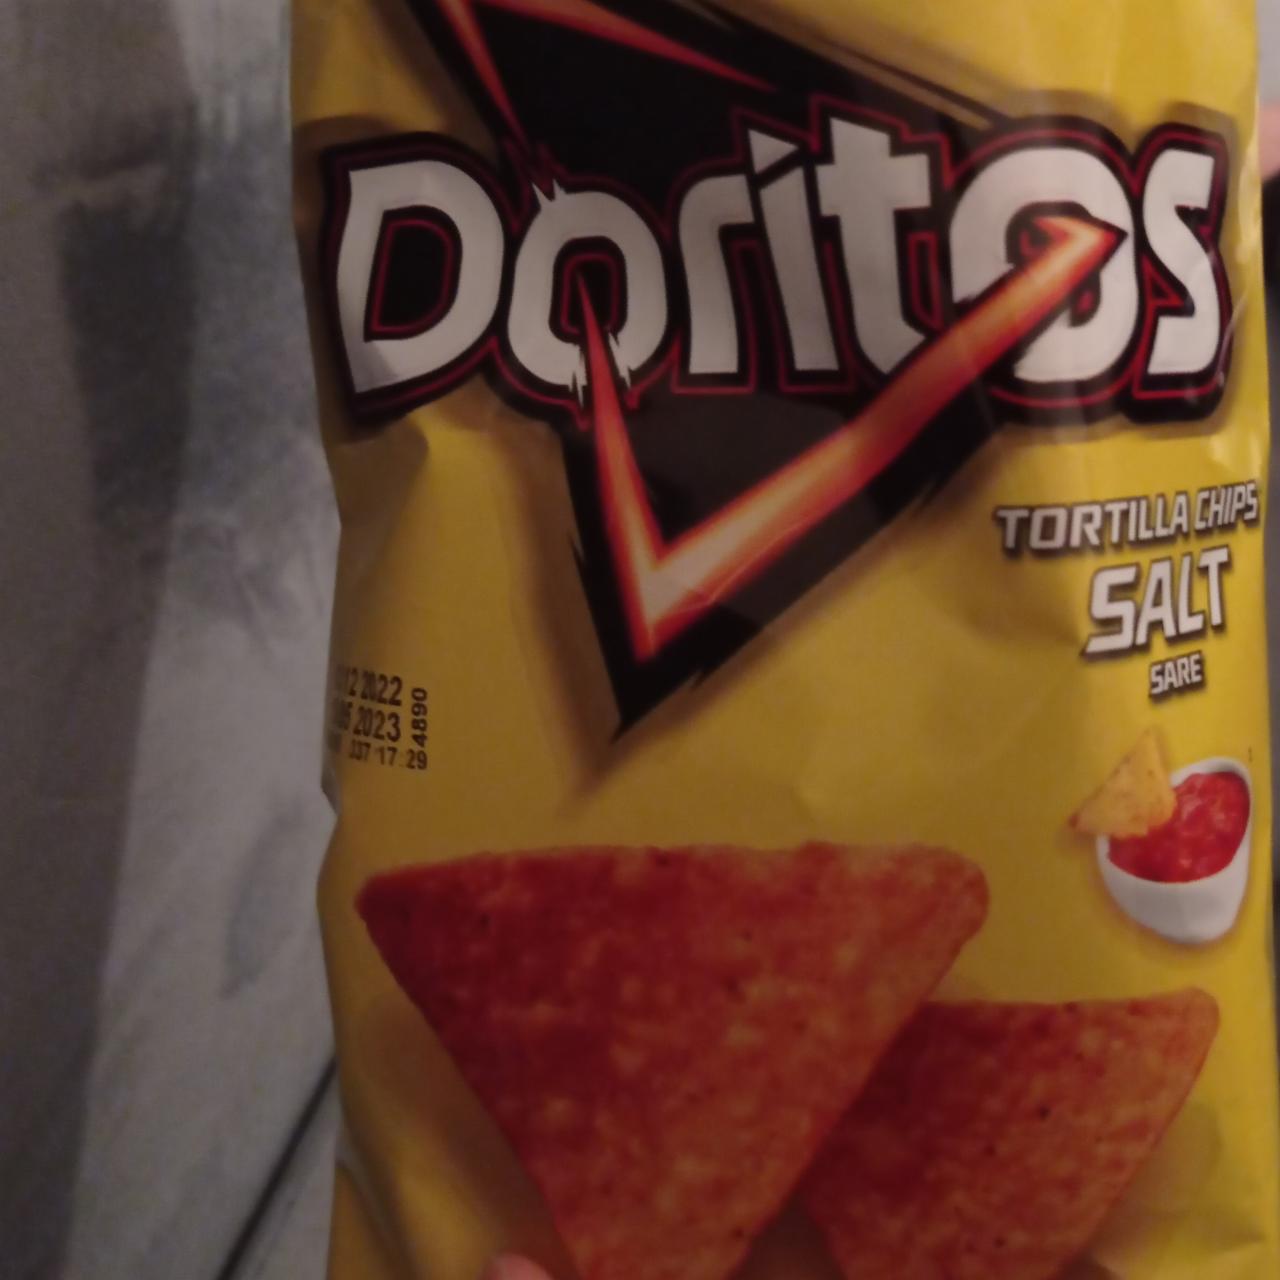 Фото - Tortilla chips с солью Doritos